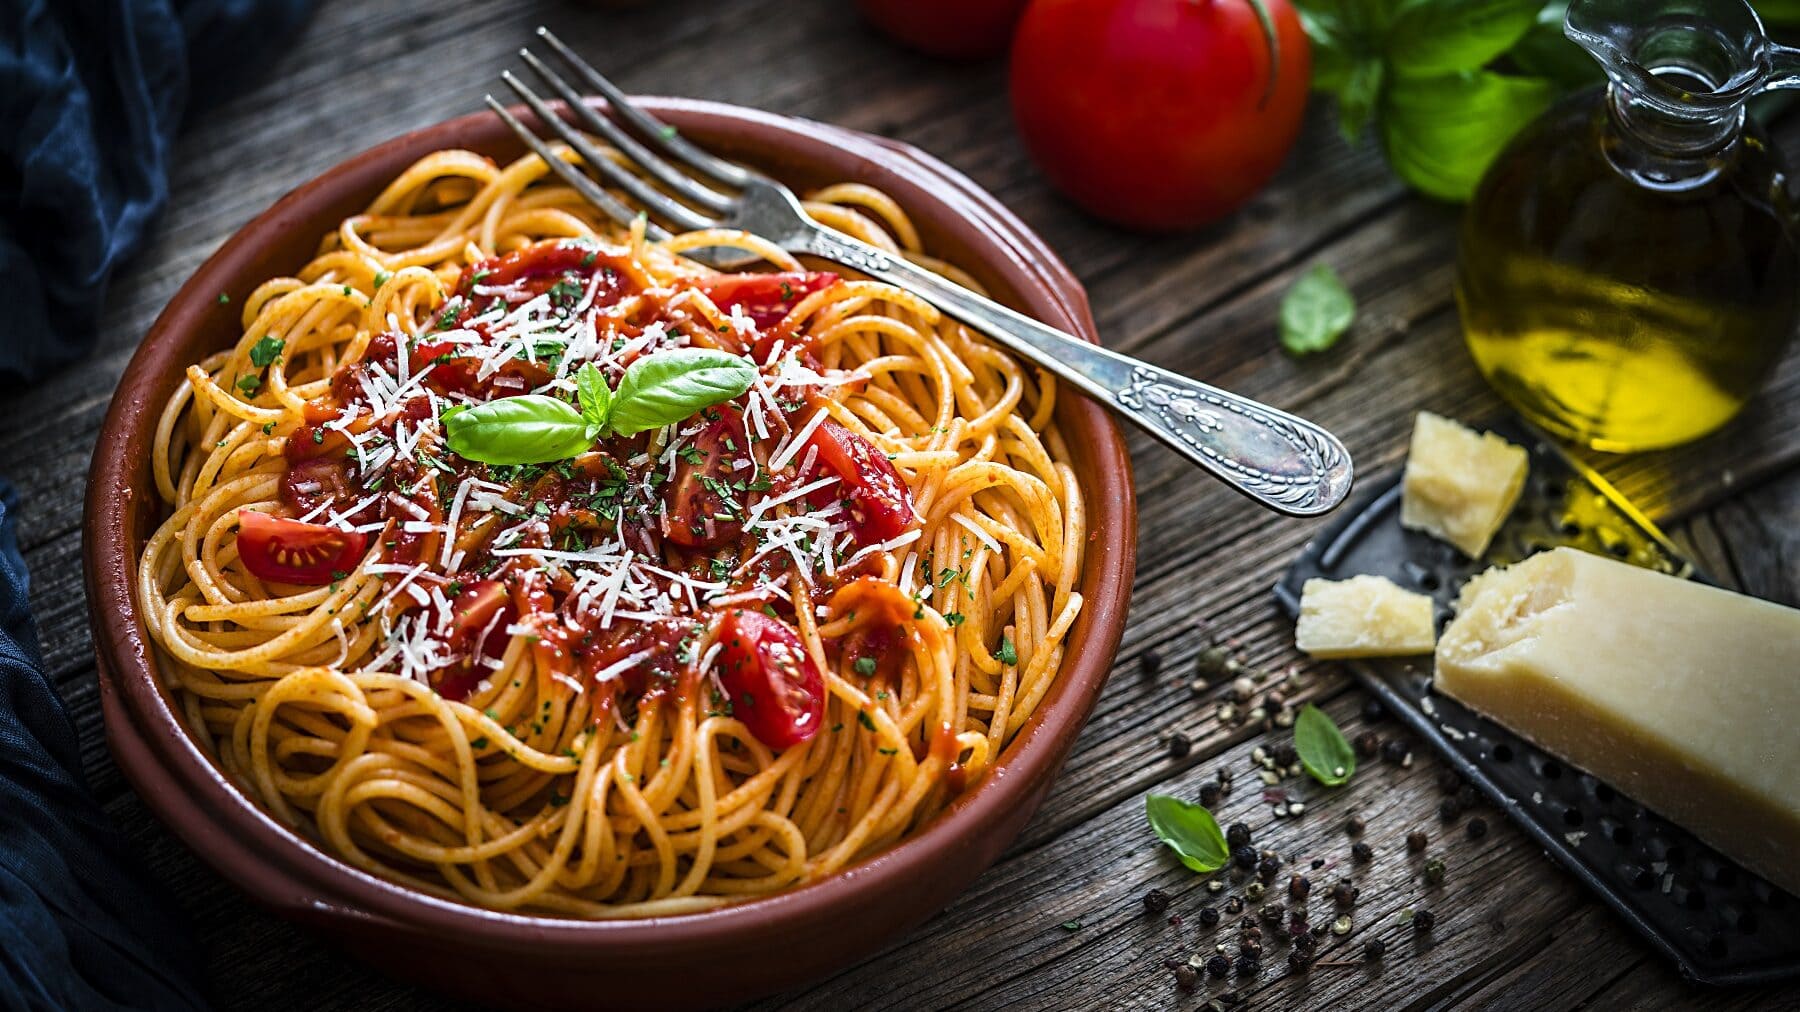 Spaghetti-Salat mit Tomatensoße, frischem Basilikum und geriebenem Parmesan in einer braunen Tonschüssel auf einem dunklen Holztisch.